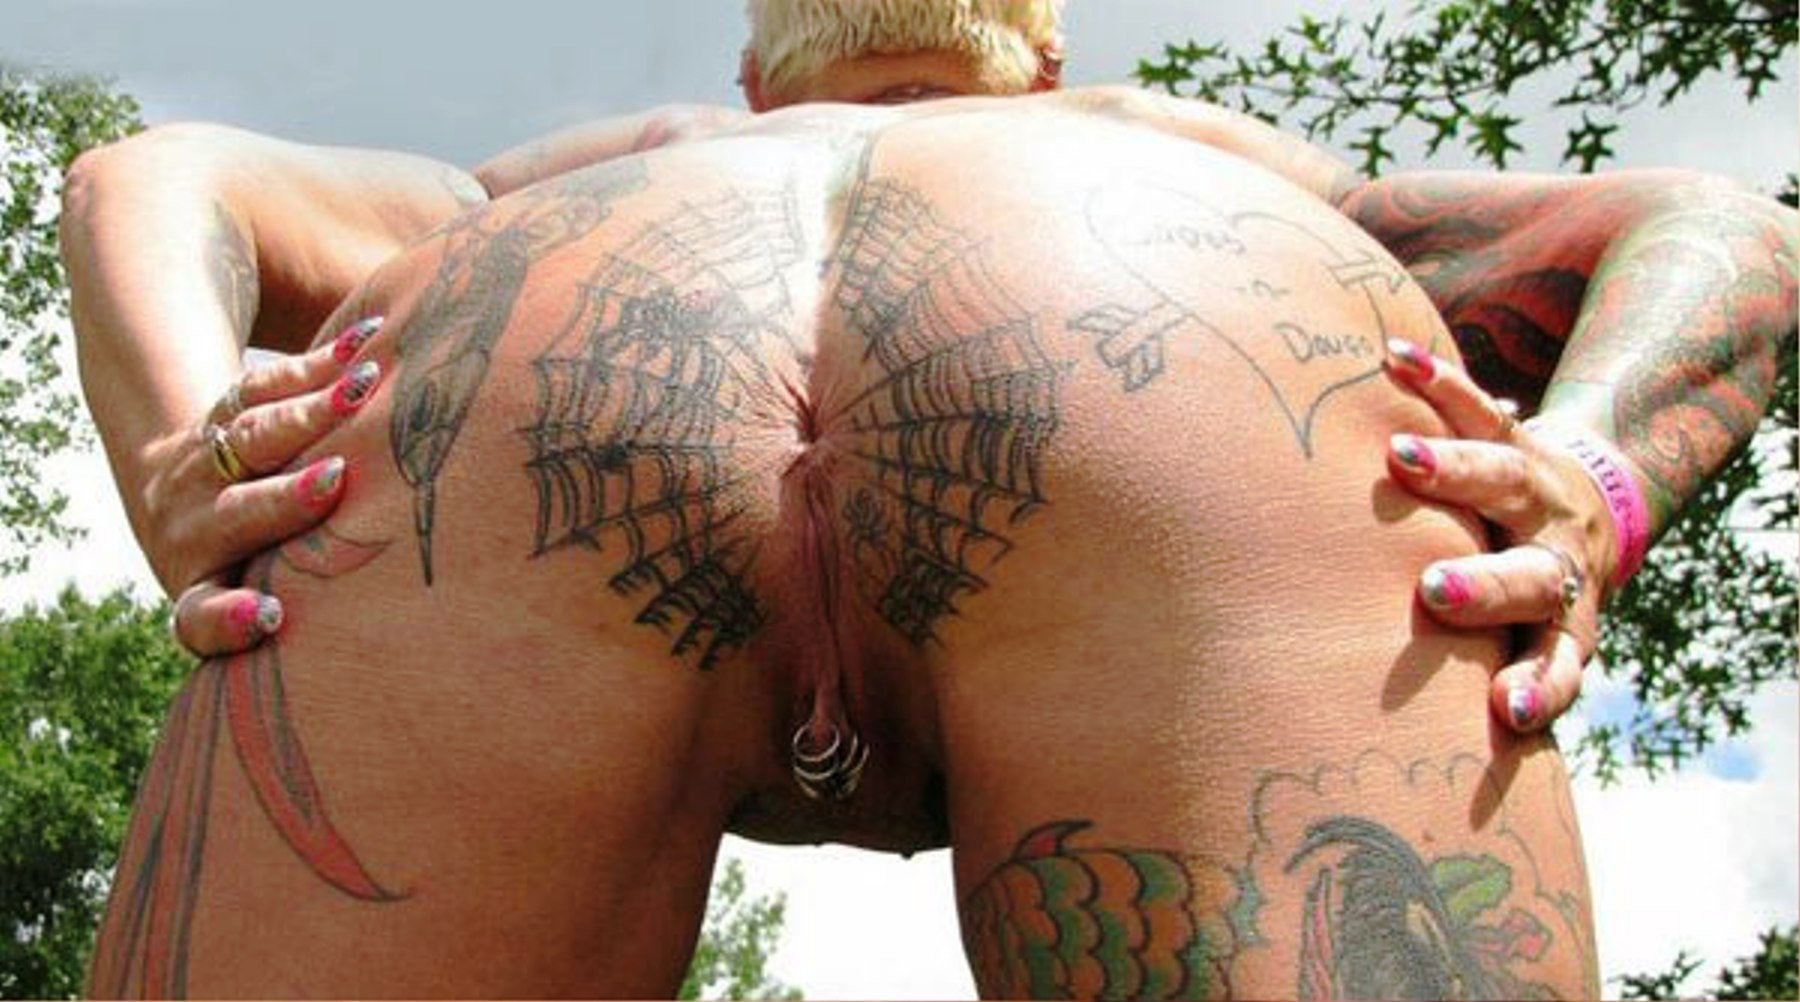 Порно татуировки на пизде 82 фото - секс фото 